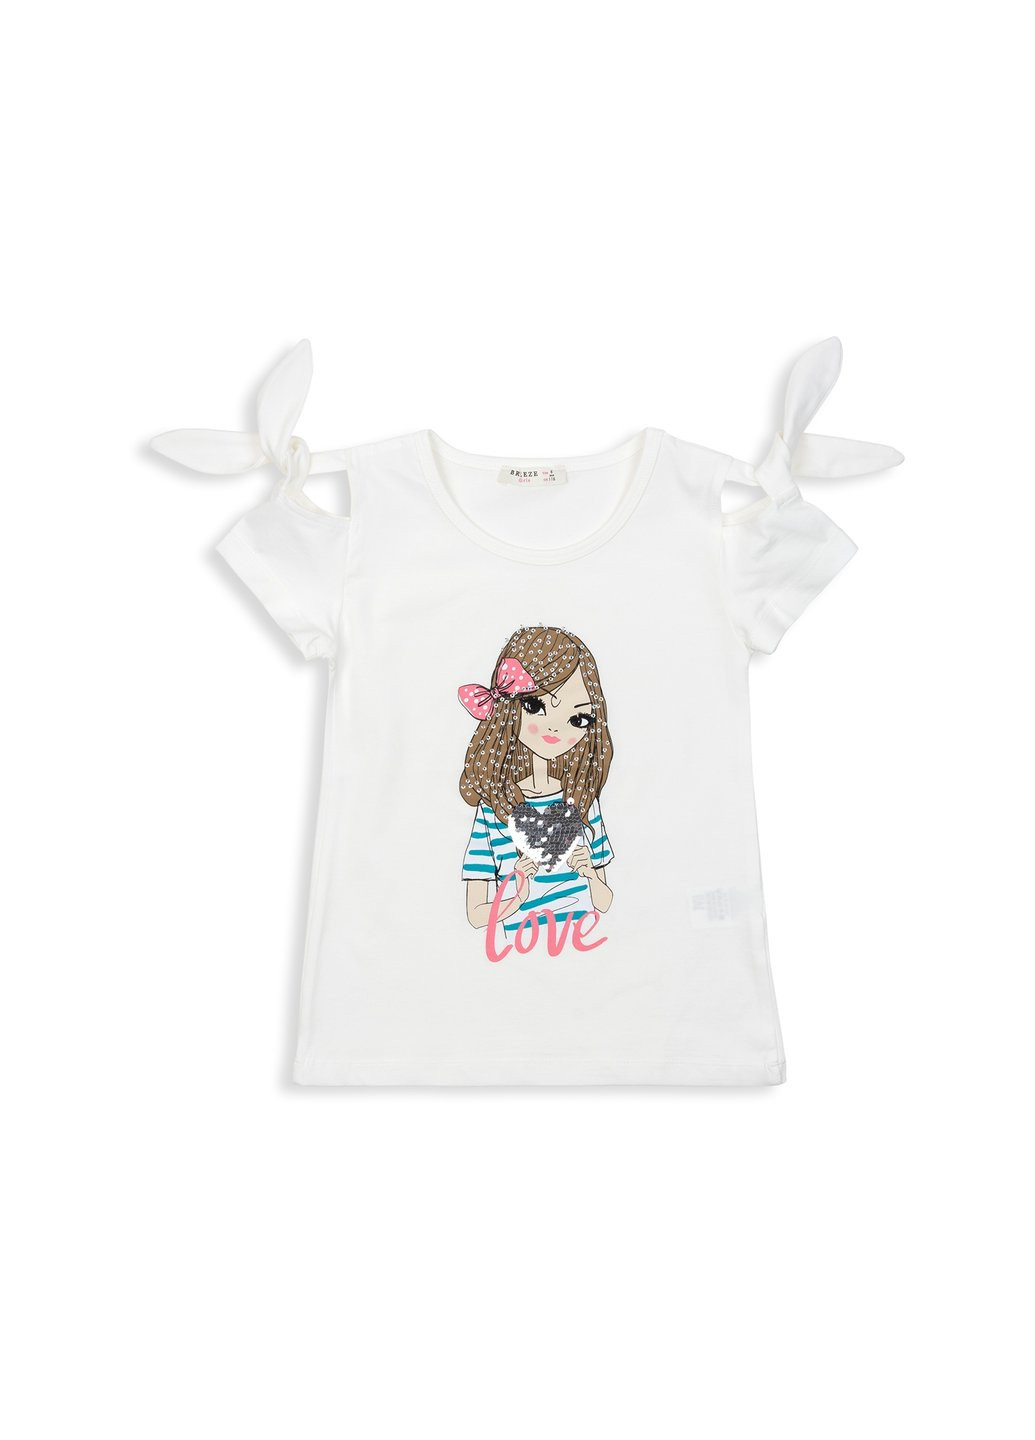 Комбинированная футболка детская с девочкой (12361-128g-cream) Breeze